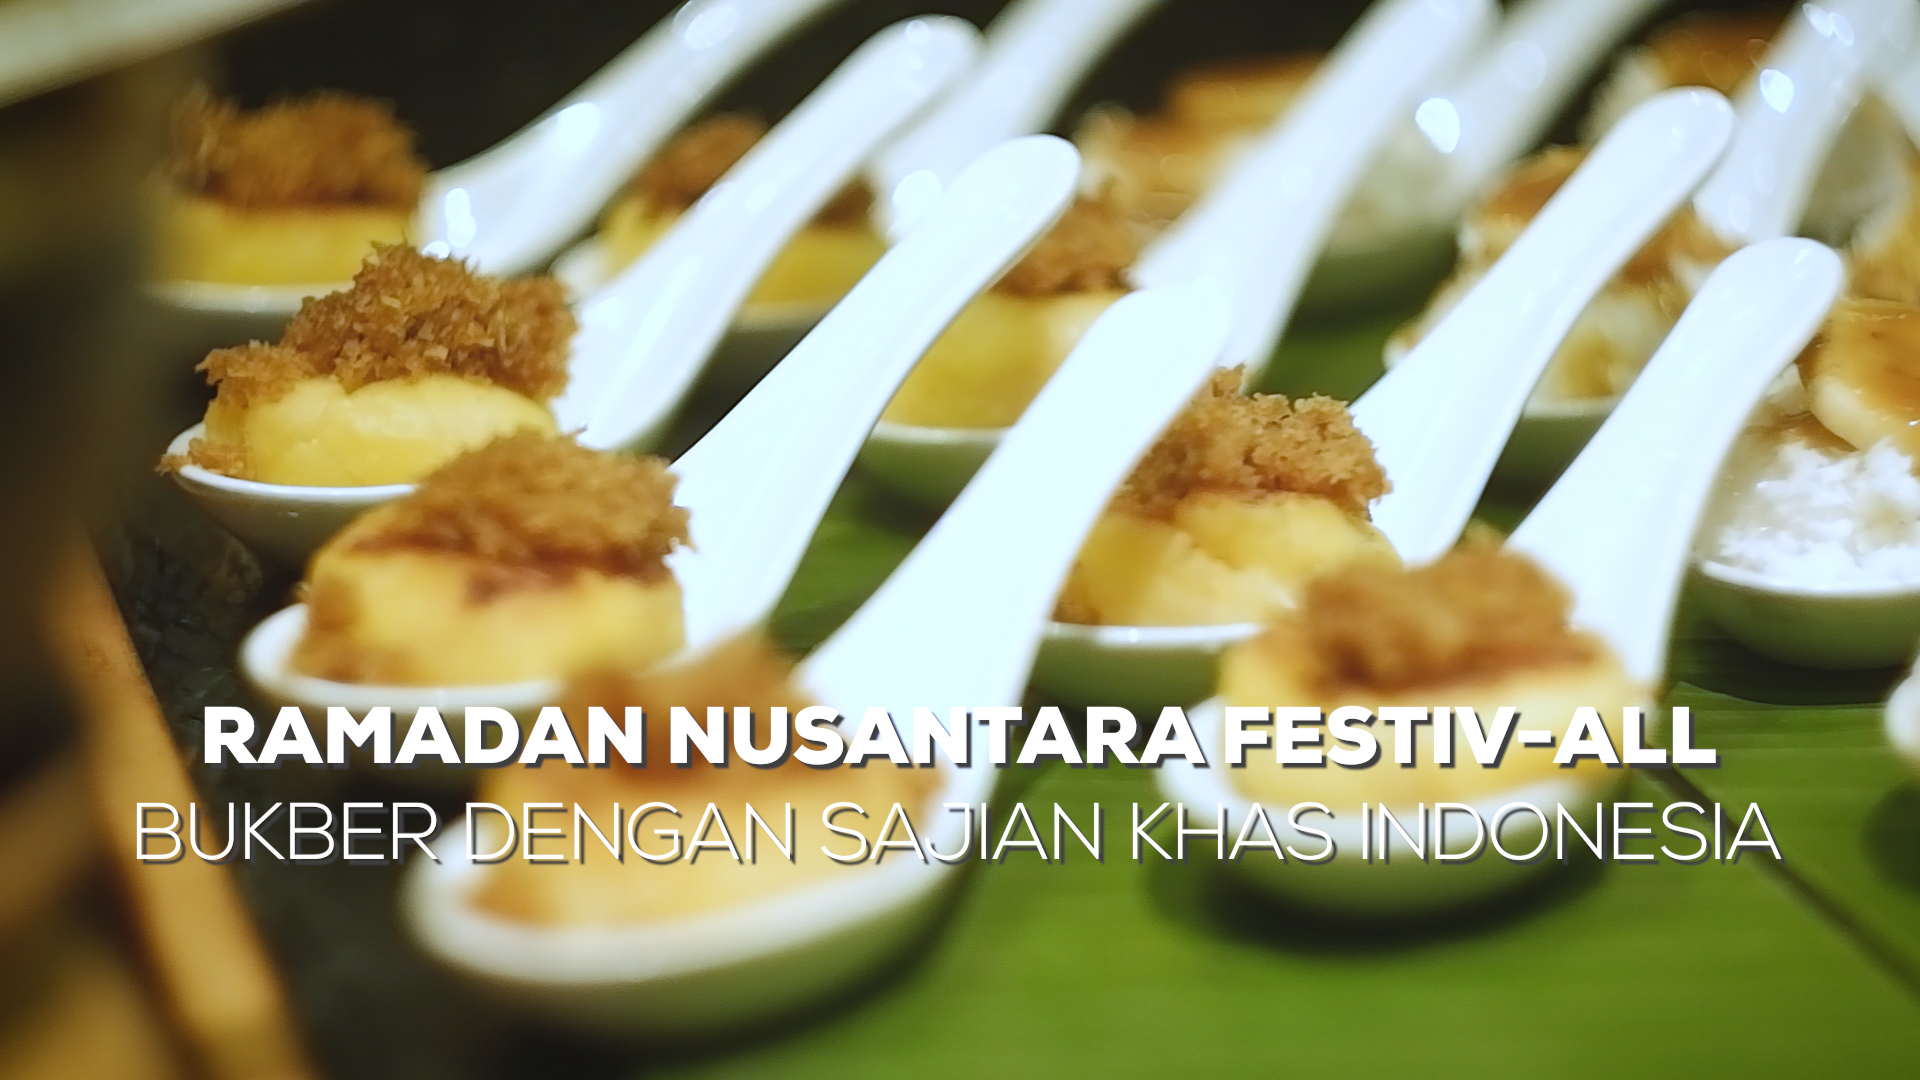 Ramadan Nusantara Festiv-ALL, Bukber dengan Sajian Khas Indonesia.